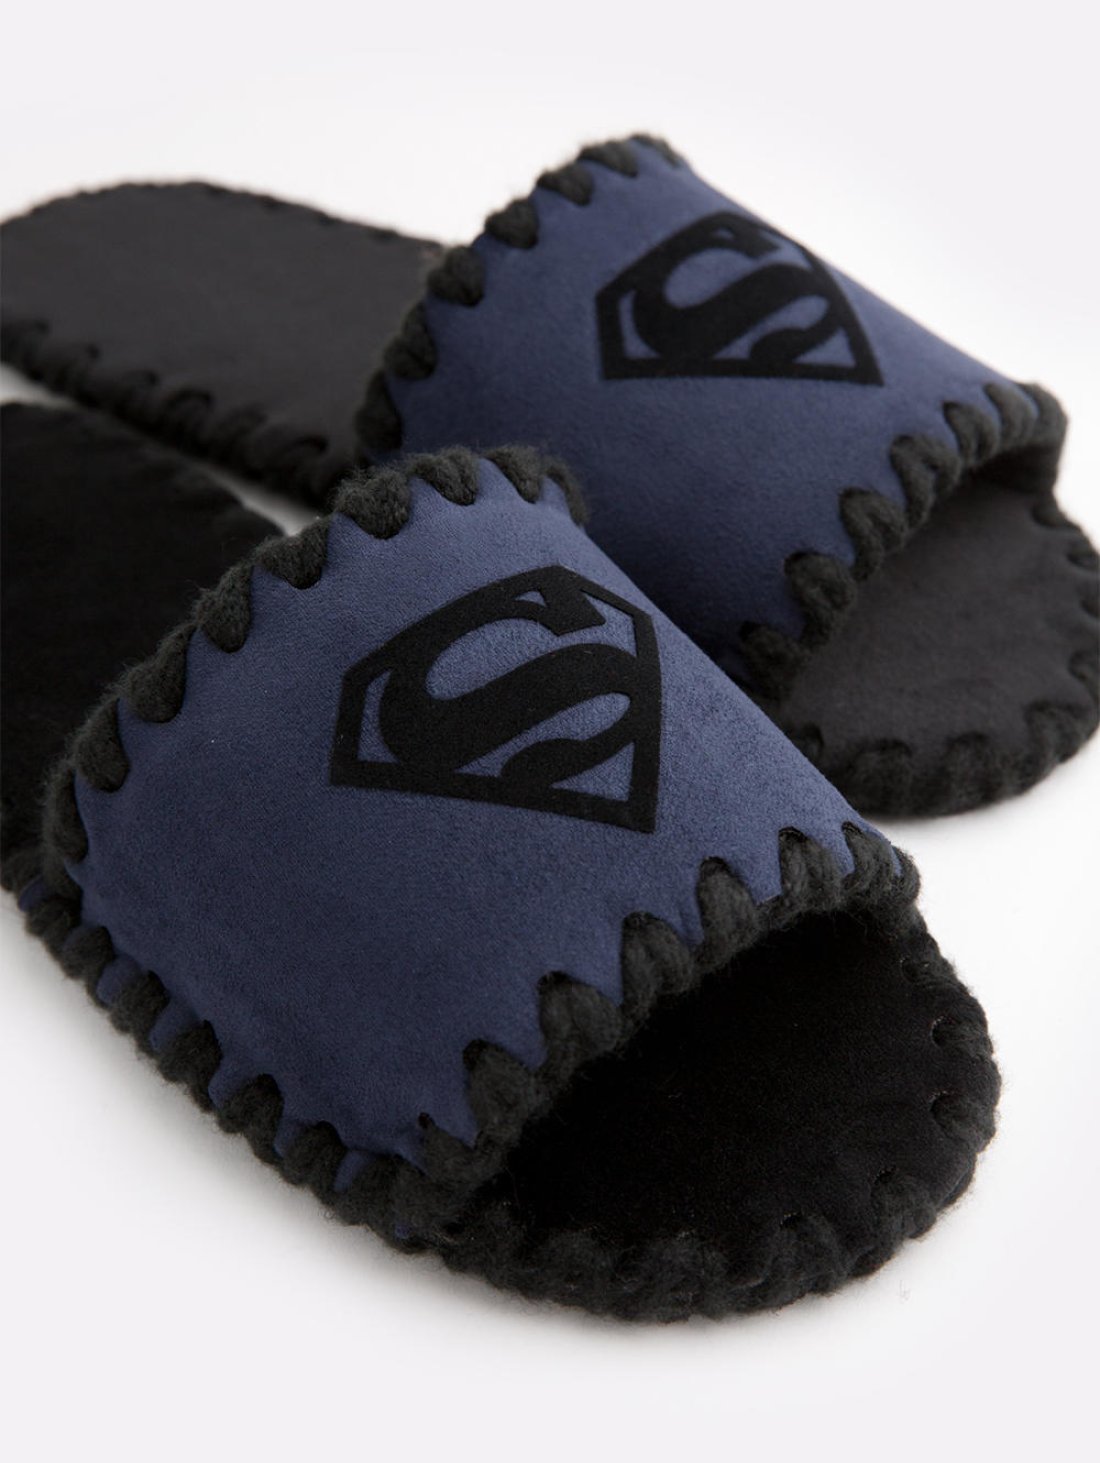 Открытые мужские тапочки для дома с эмблемой Supermen синего цвета. Family Story Фото -1